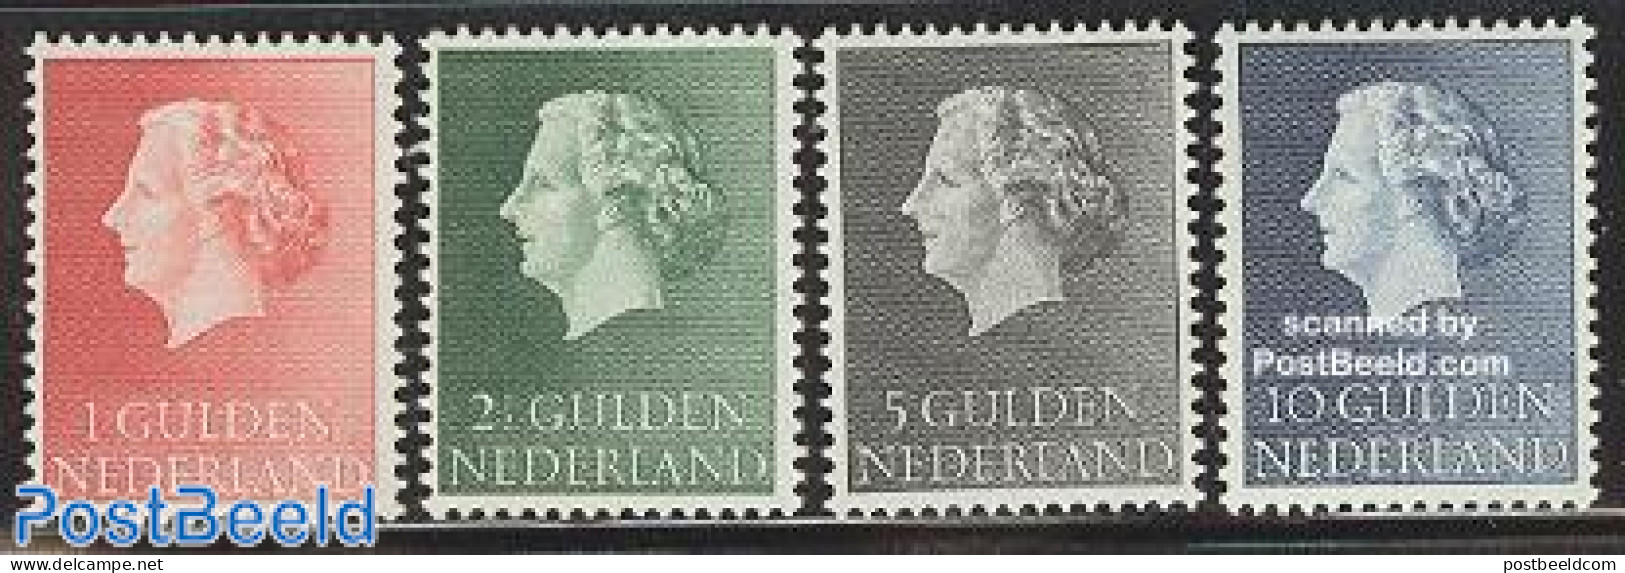 Netherlands 1954 Definitives 4v, Mint NH - Unused Stamps